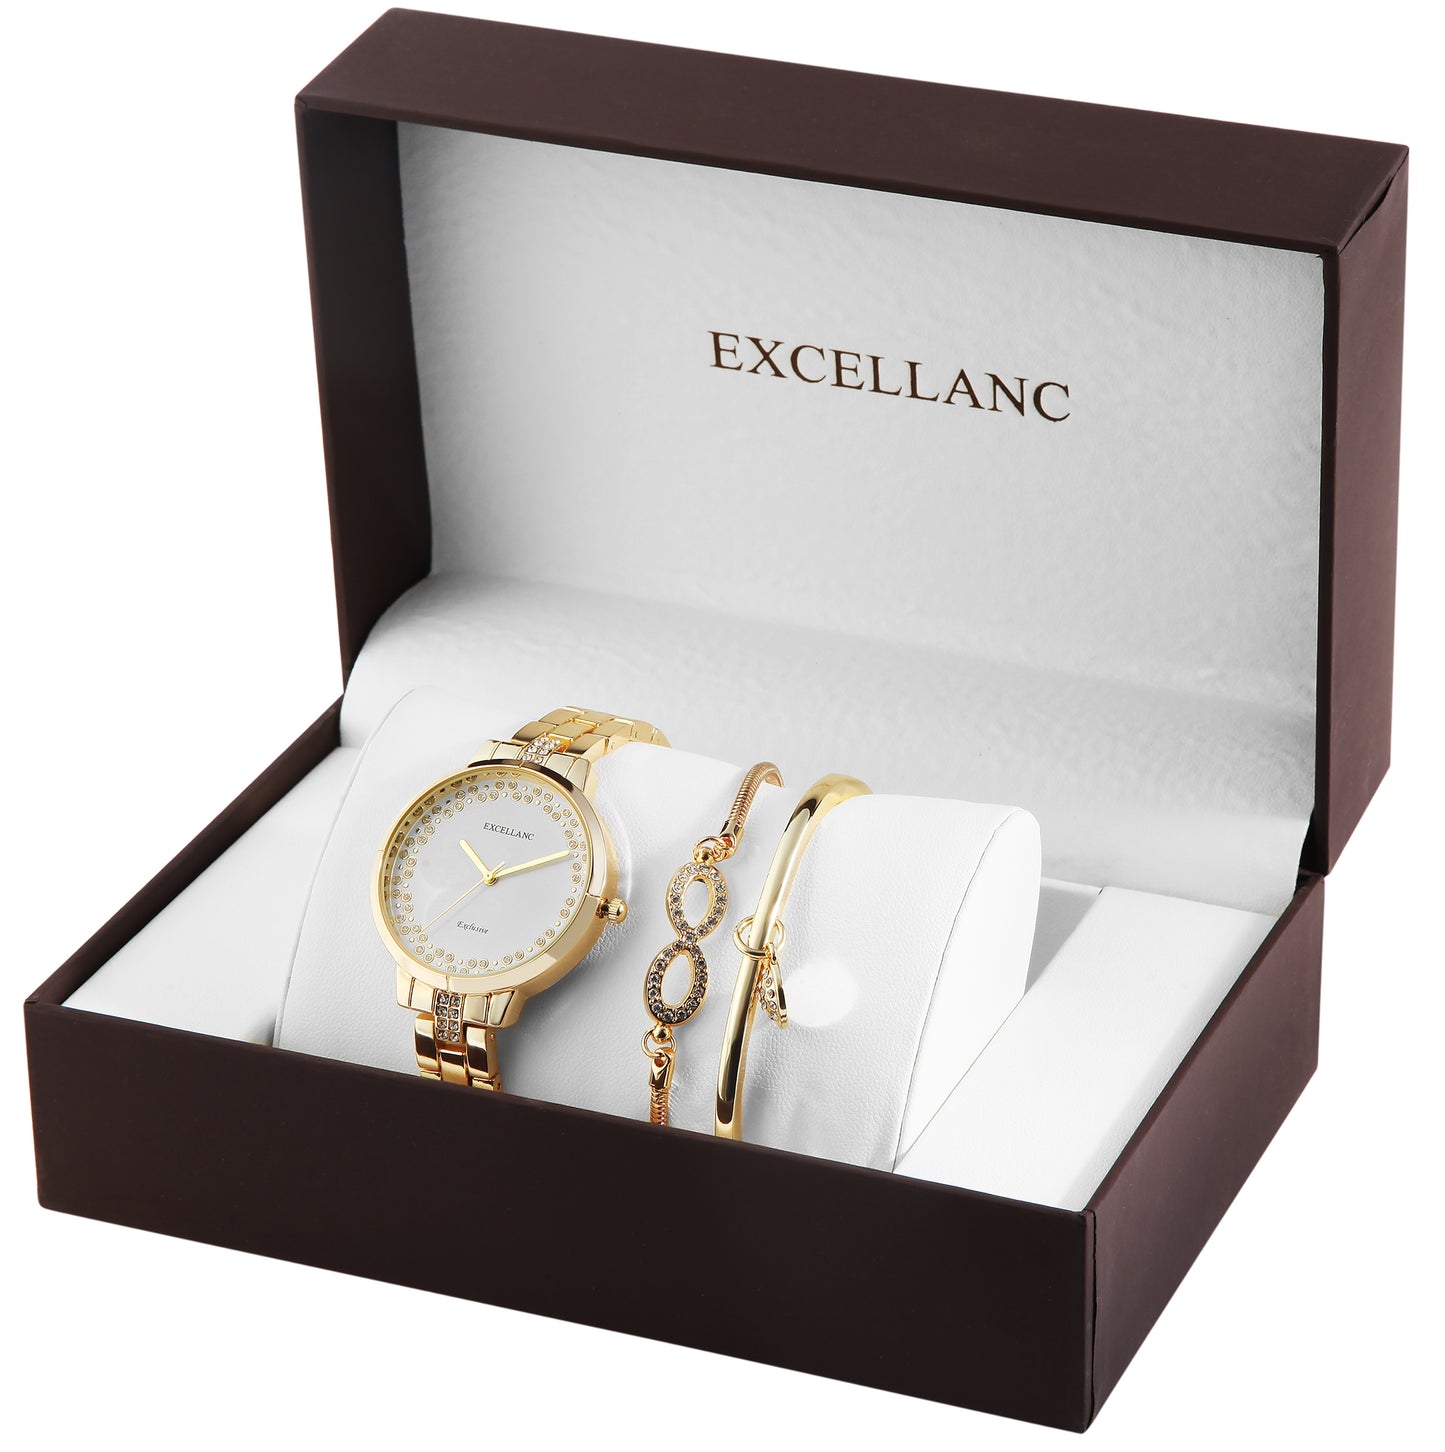 Excellanc darčekový set hodiniek: dámske hodinky + 2 náramky, zlatý tón, zlatá farba, vysoko kvalitný kremenný mechanizmus, ciferník v bielej farbe